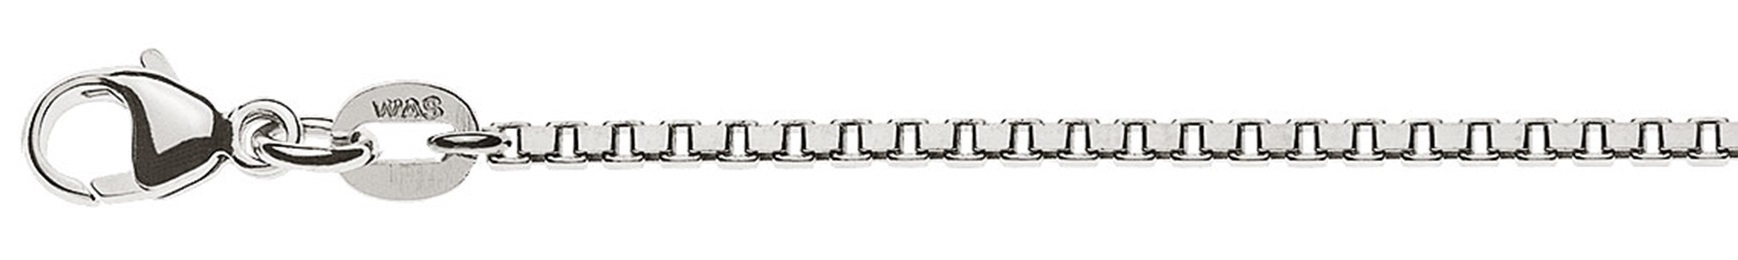 AURONOS Prestige Halskette Weissgold 18K Venezianerkette diamantiert 40cm 1.6mm